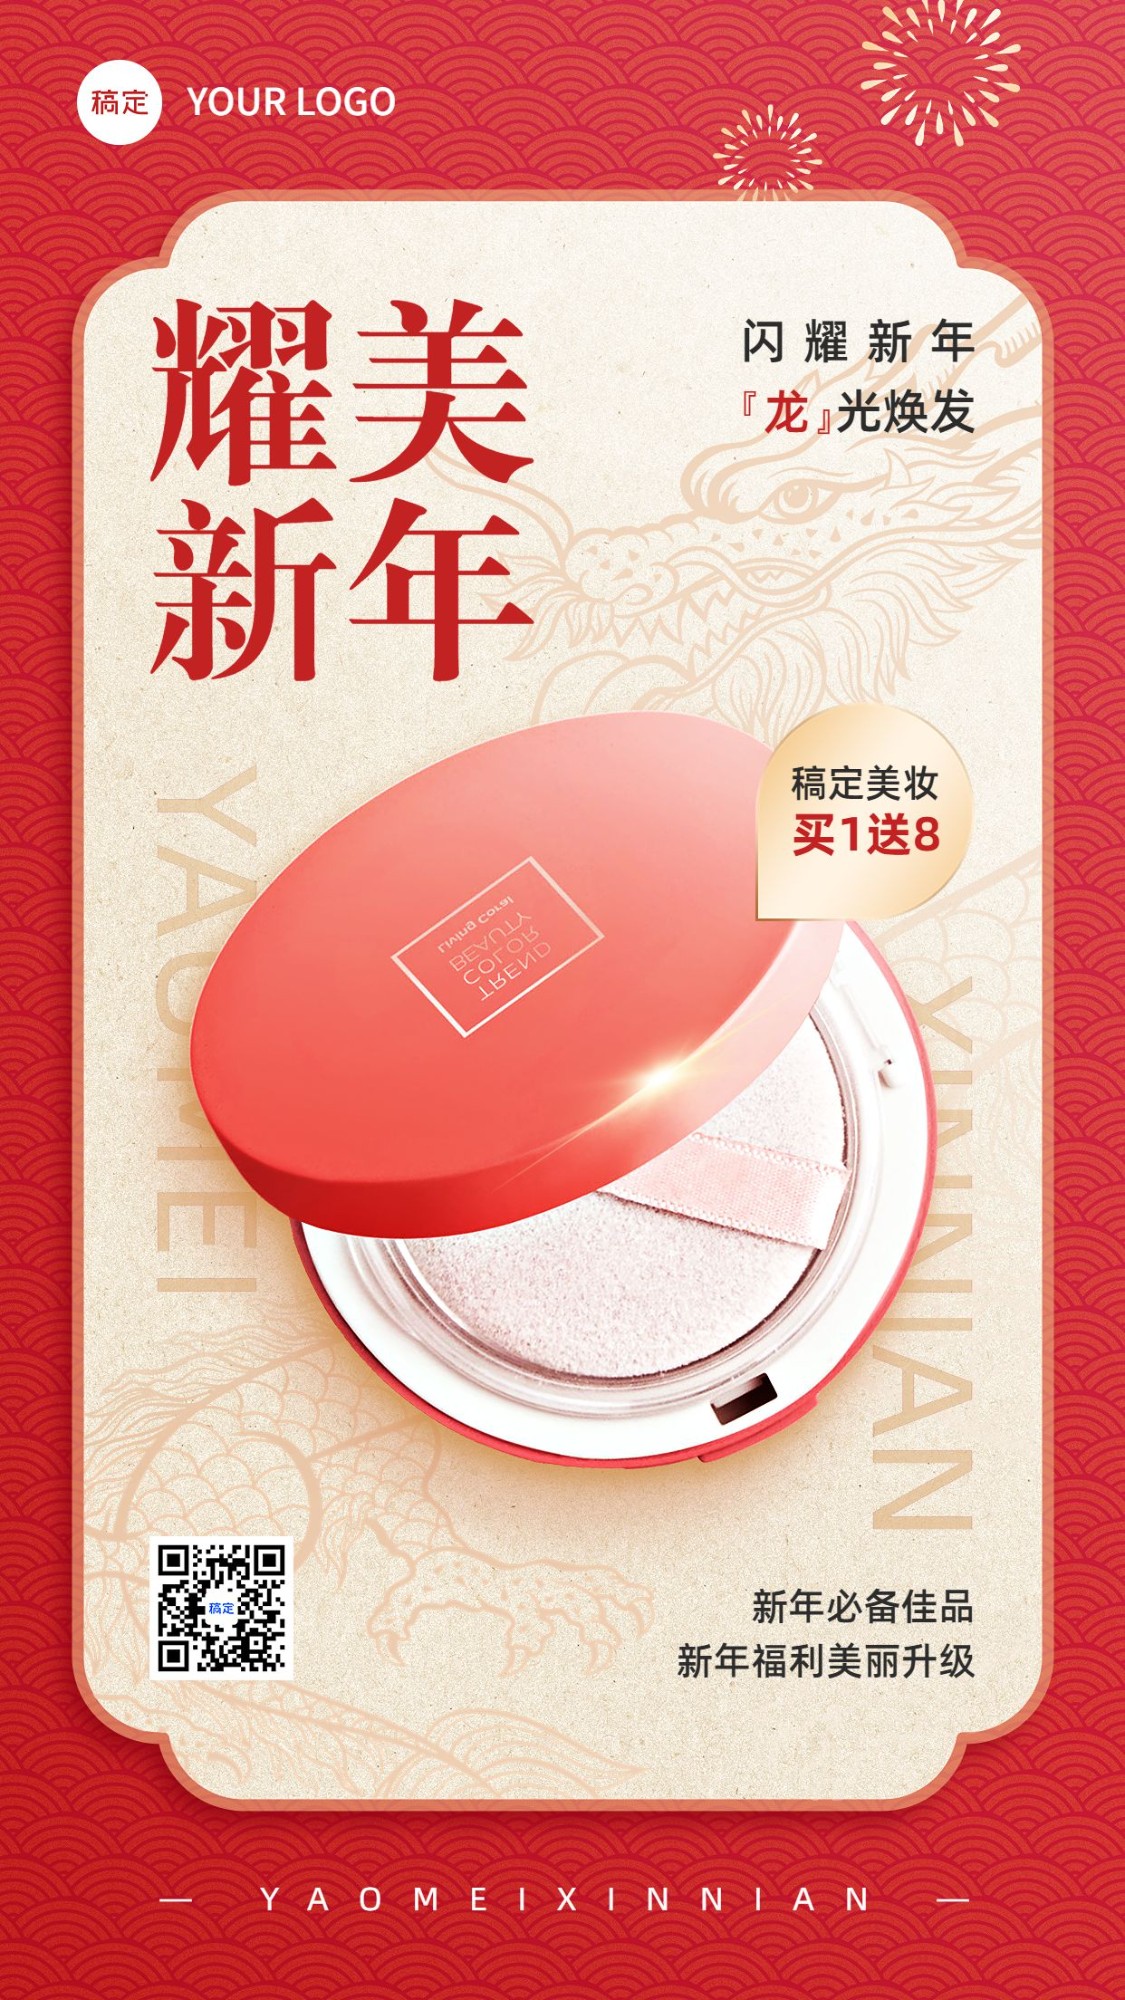 春节龙年美容美妆节日营销产品展示手机海报预览效果